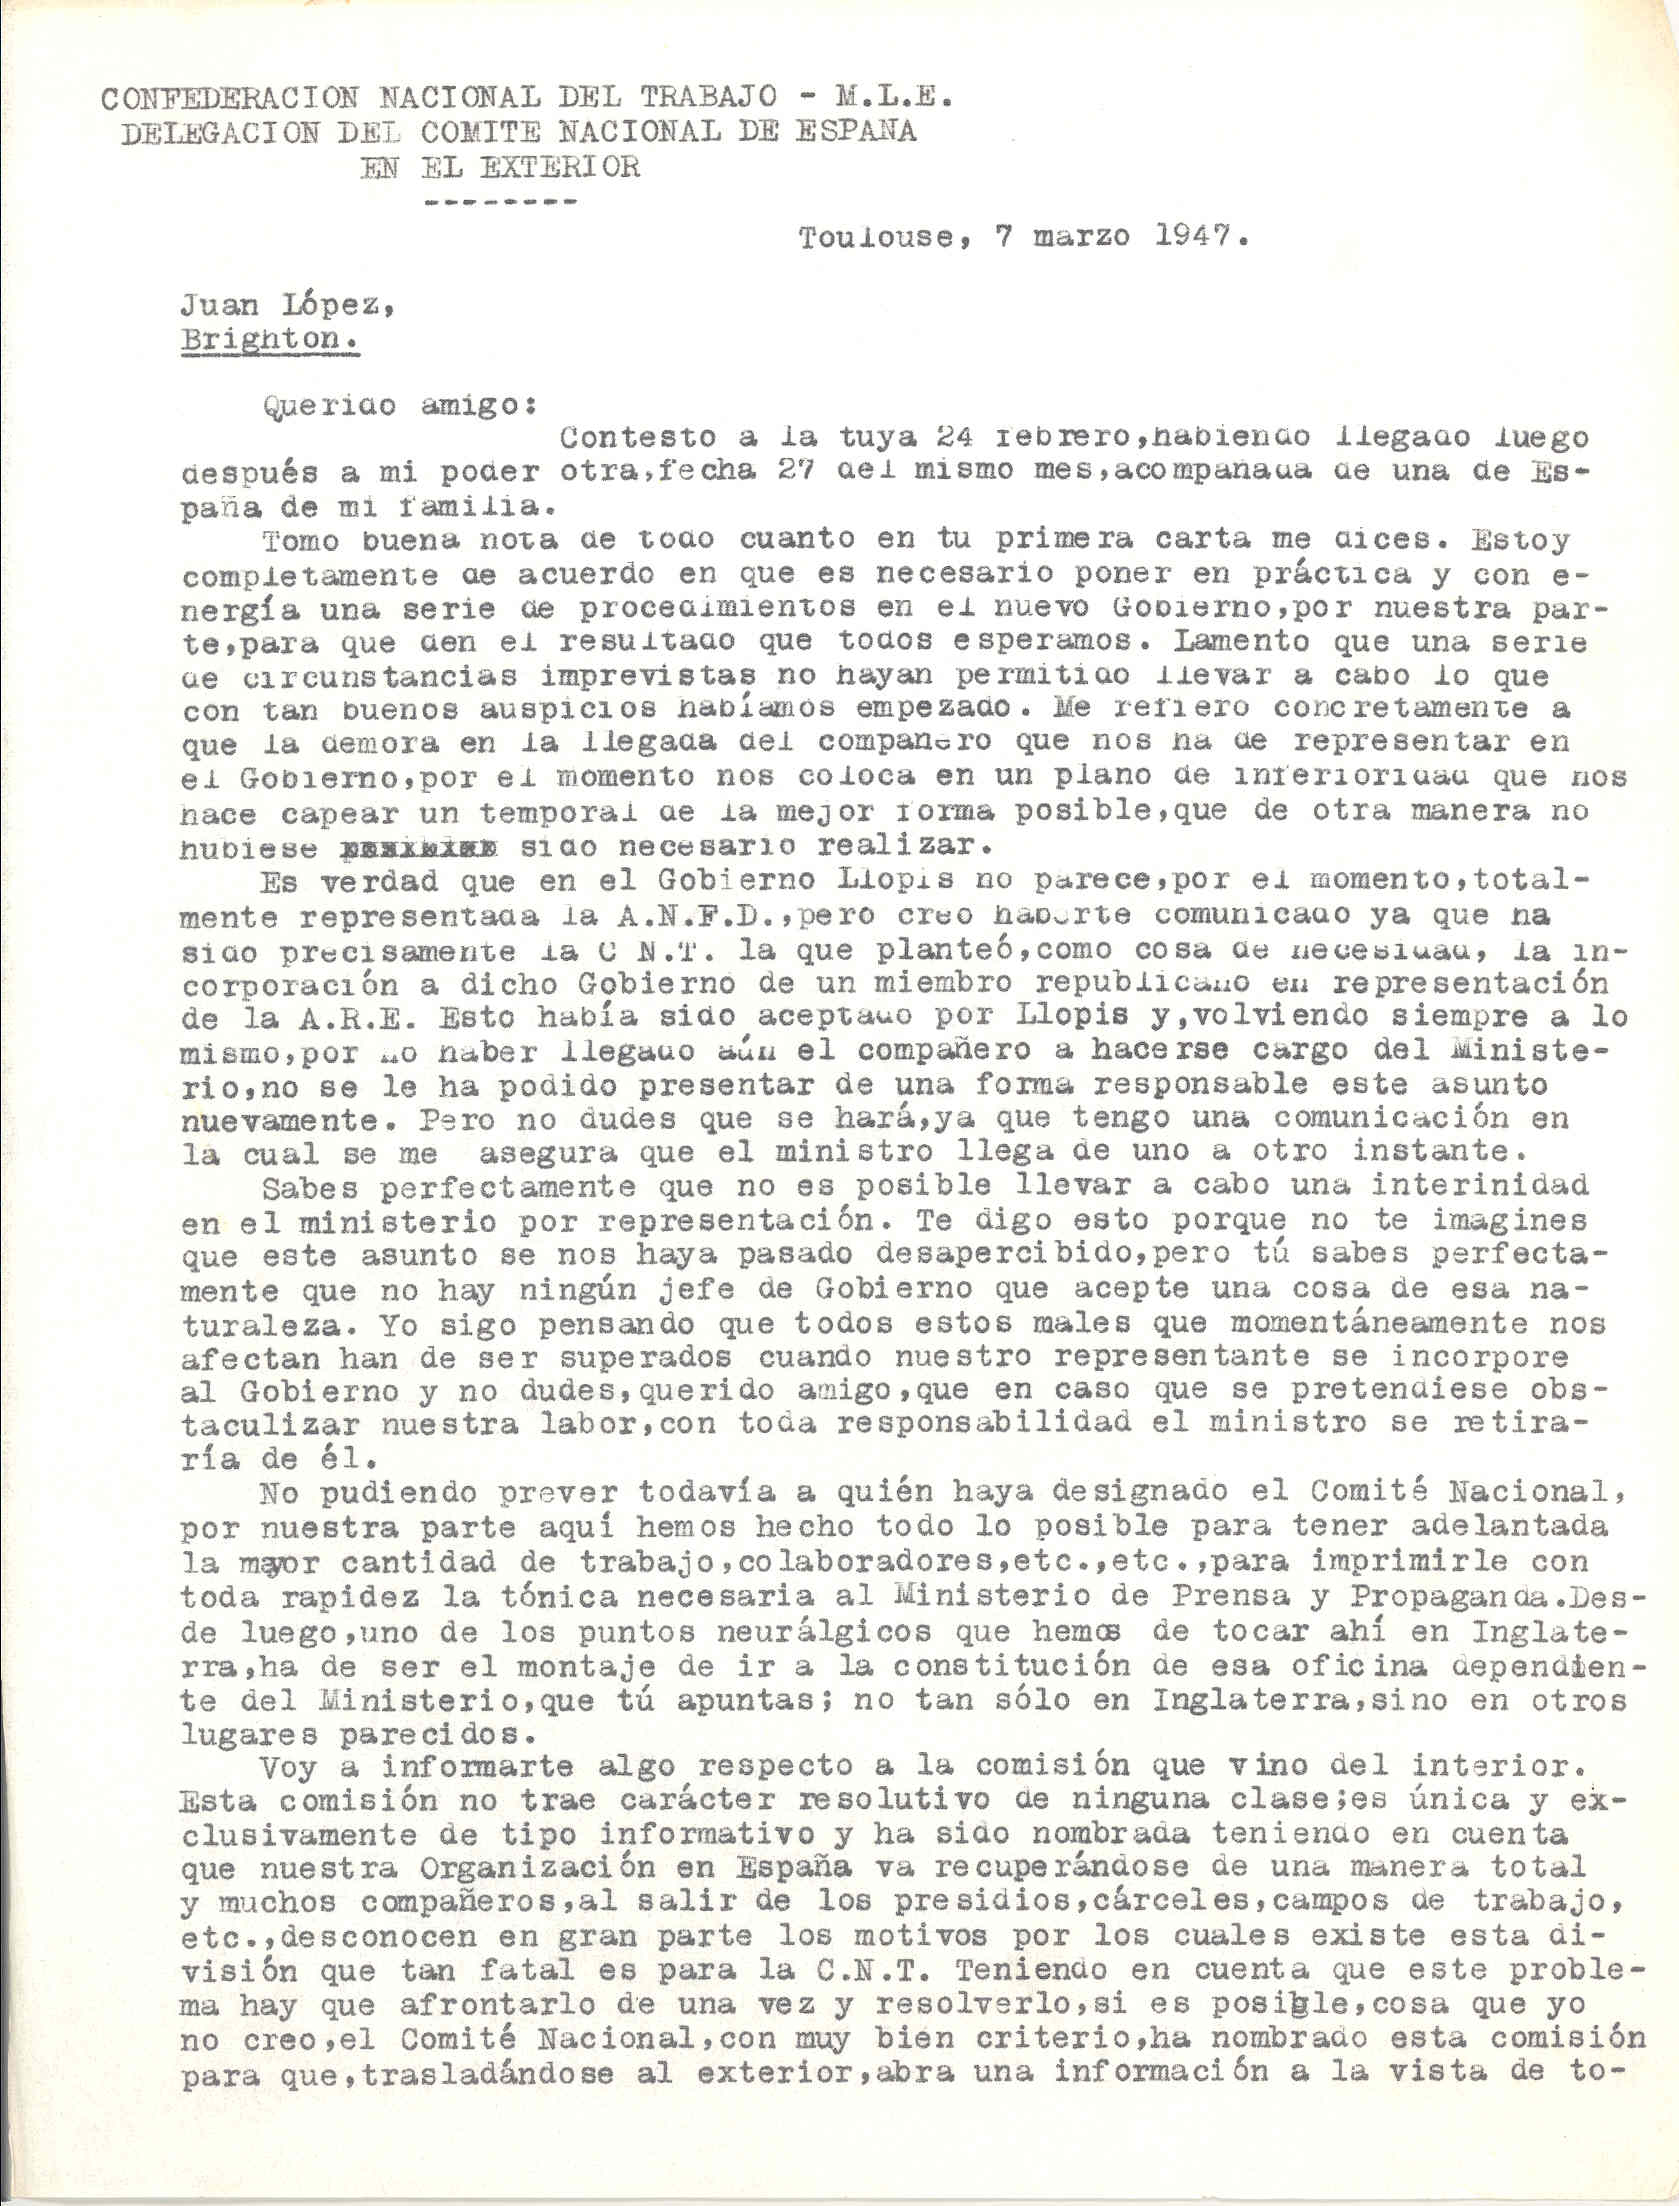 Carta de José Penido en la que expone la incorporación de Llopis al gobierno en representación de la Alianza Republicana Española